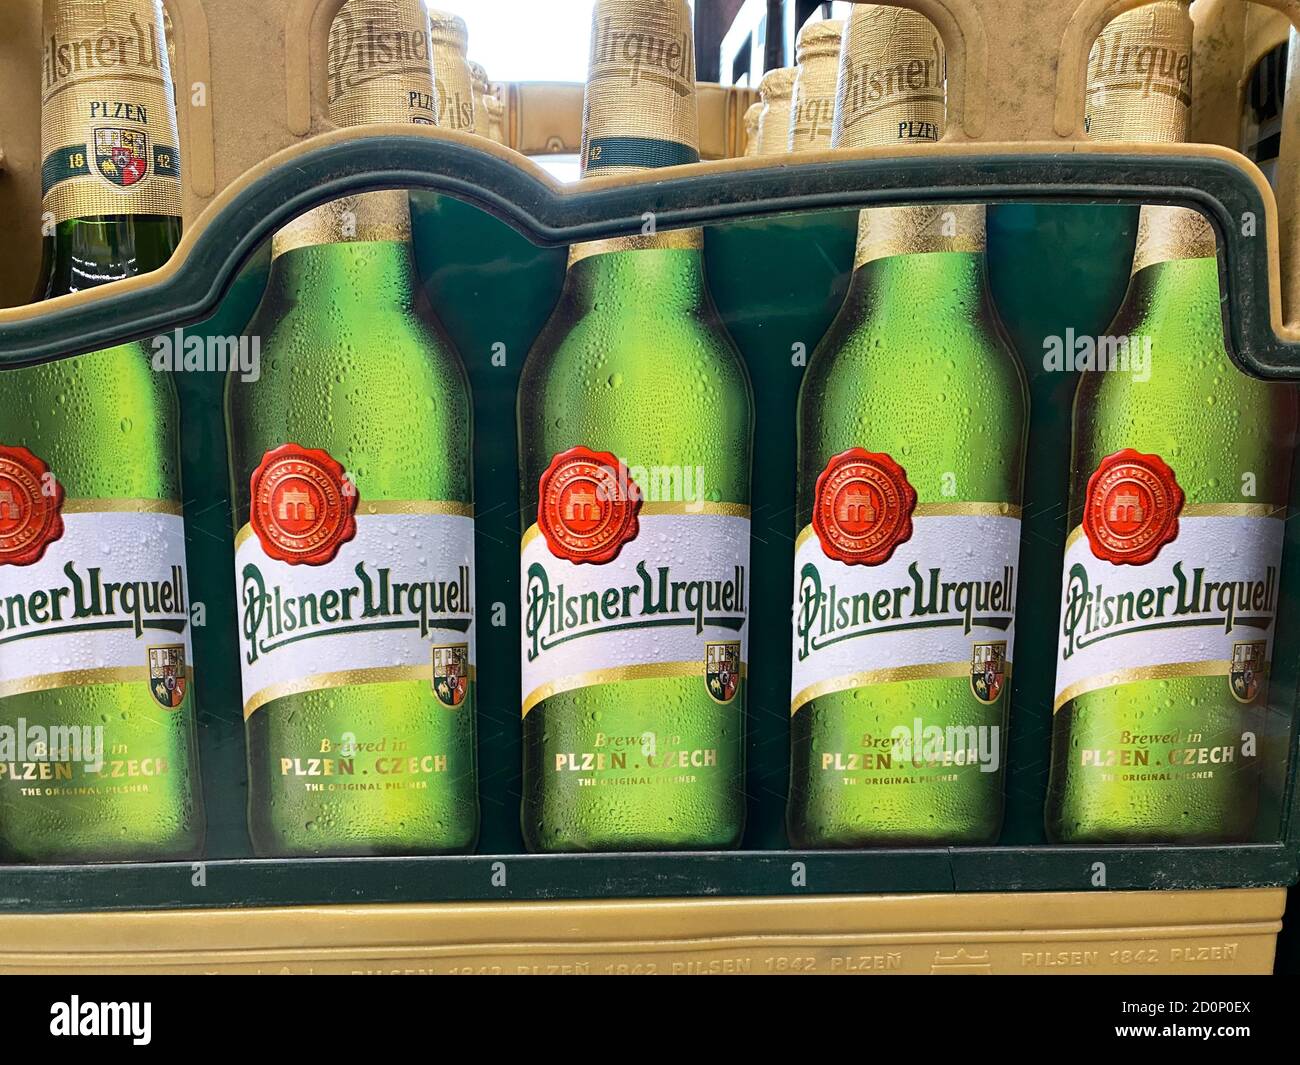 Viersen, Deutschland - 9. Juli. 2020: Blick auf die isolierte Pilsener Urquell Bierkiste im deutschen Supermarkt Stockfoto